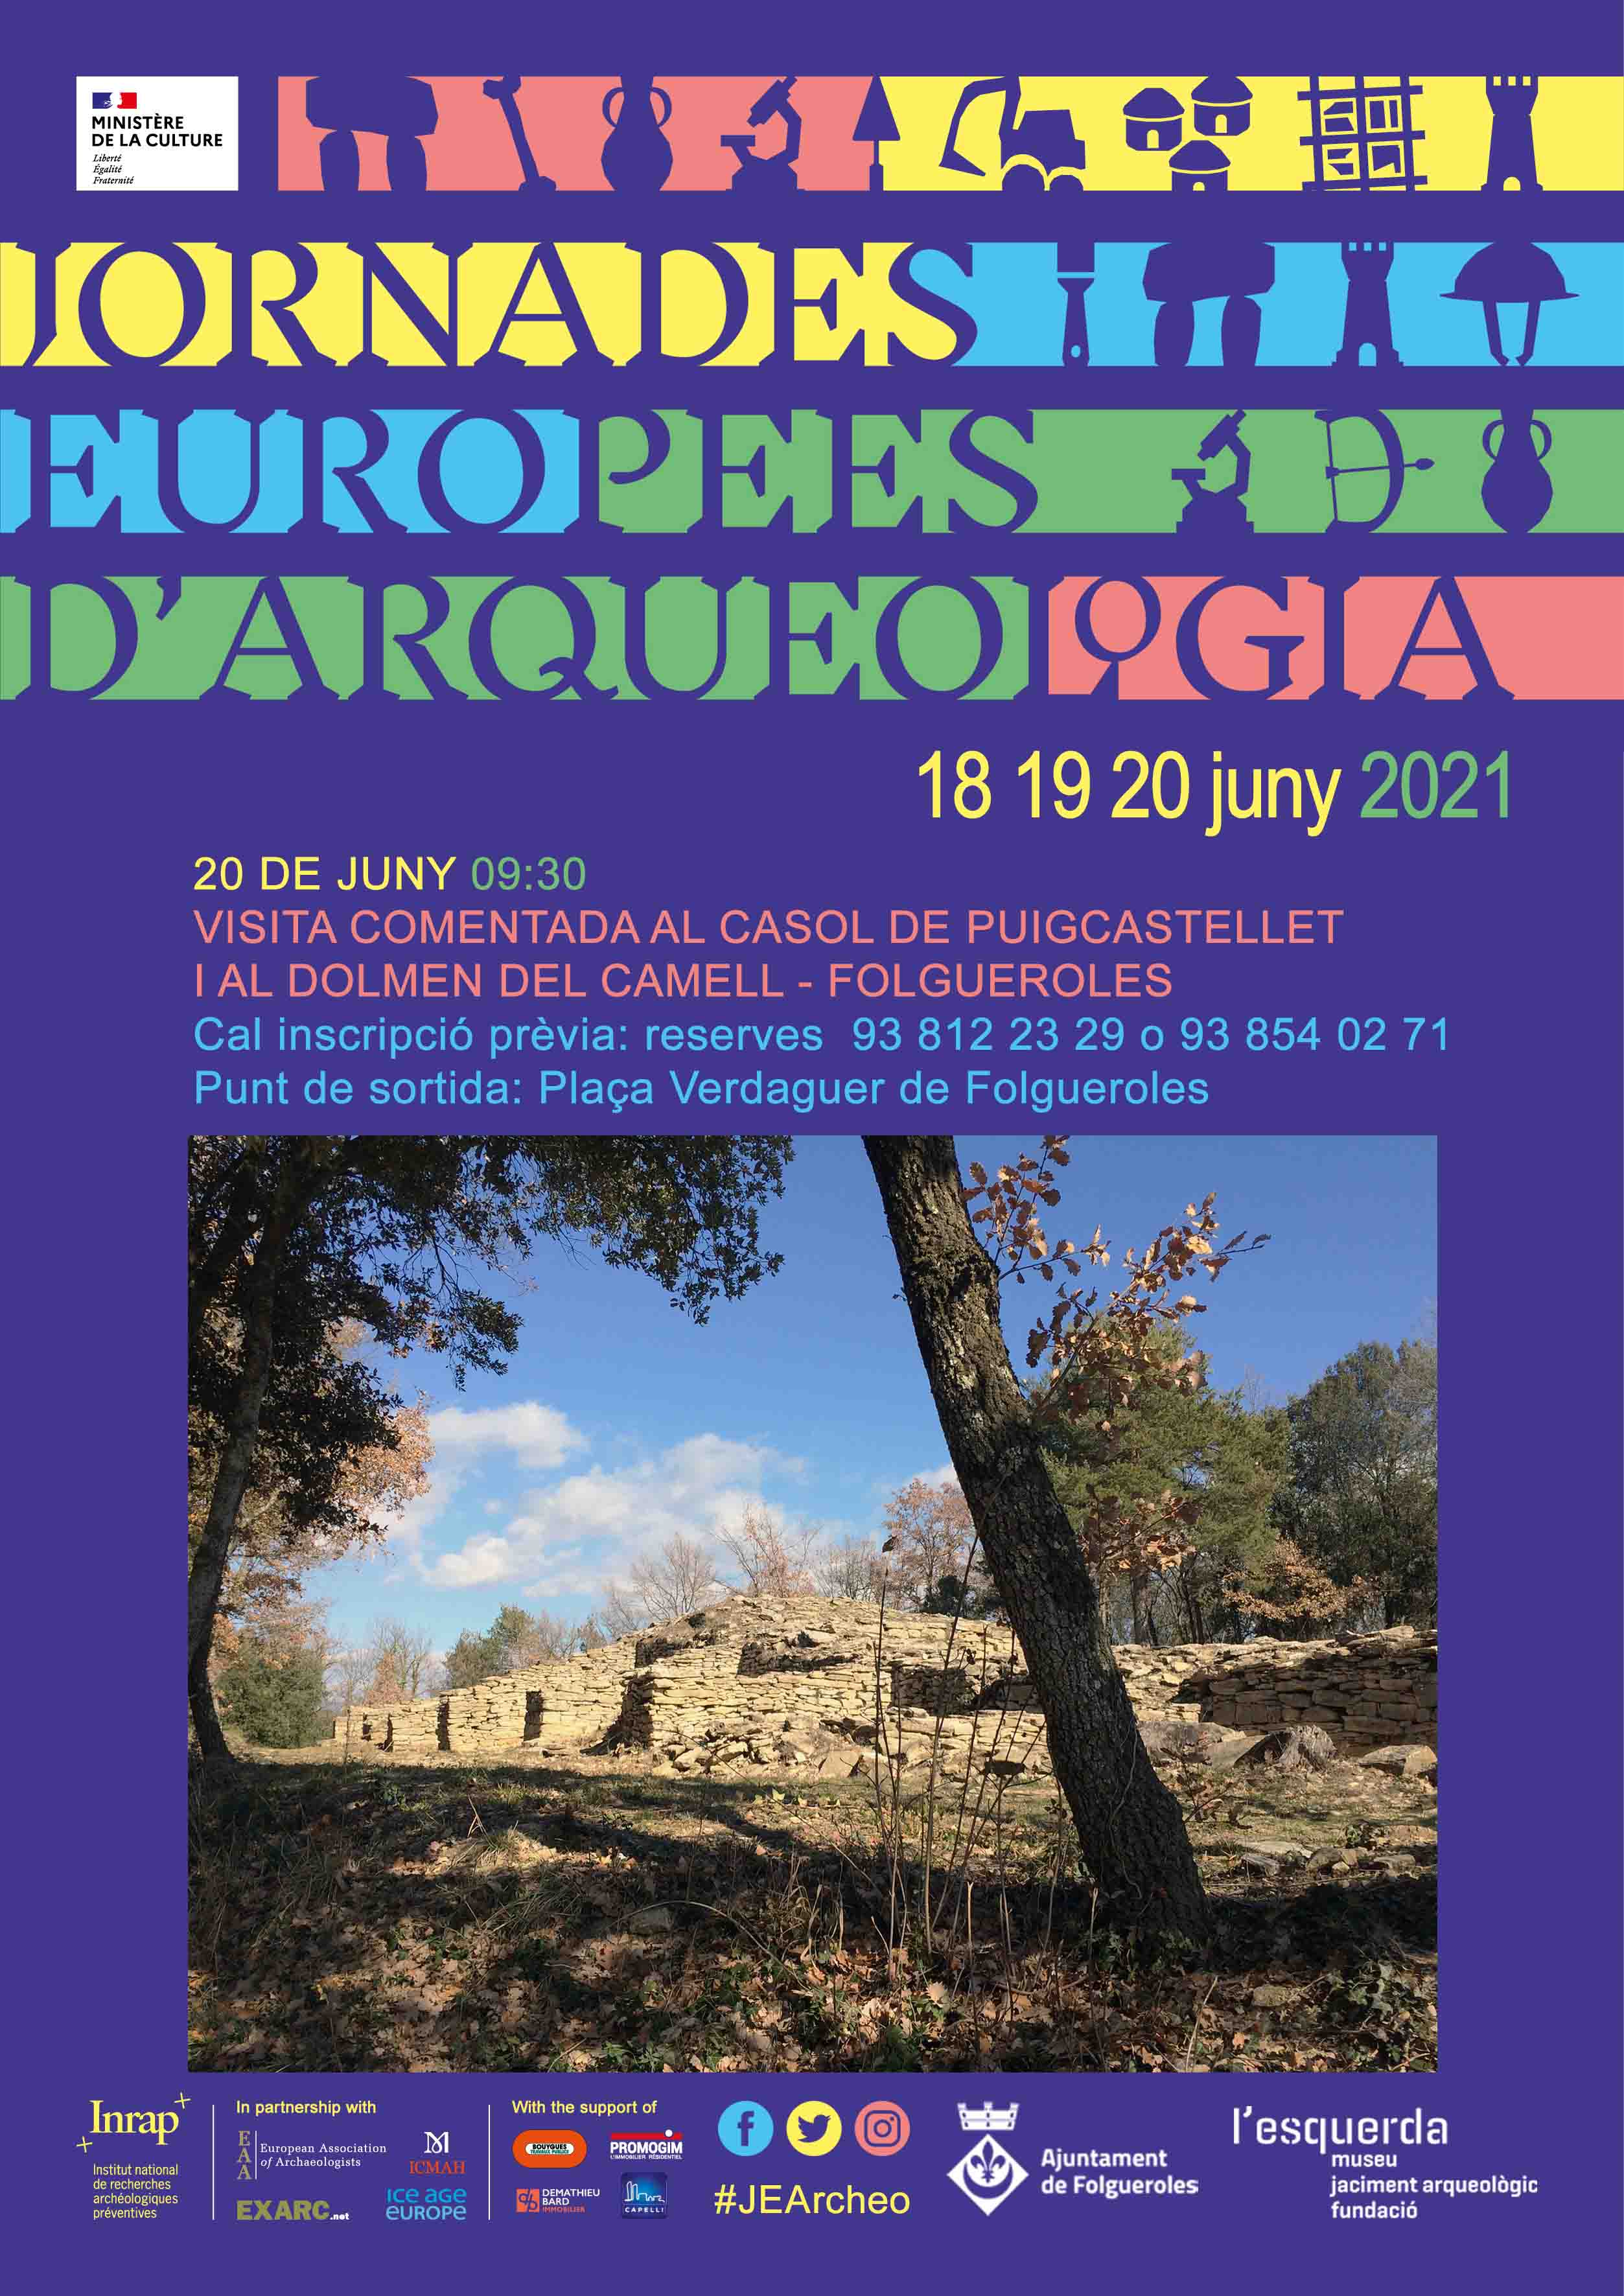 Jornades Europees d'Aqueologia